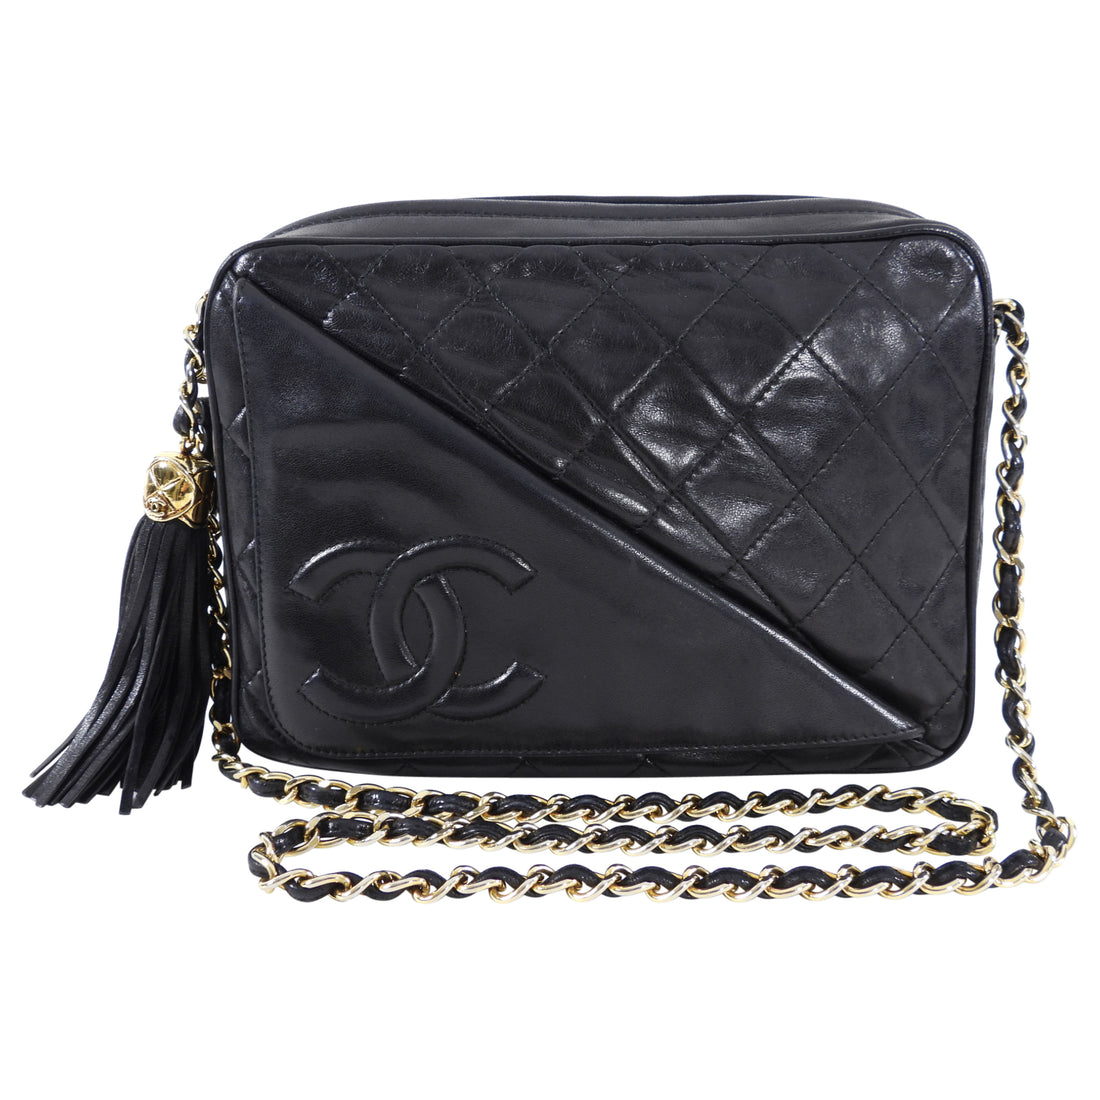 Buy Pre-Owned Chanel Vintage Tassel Shoulder Bag Black